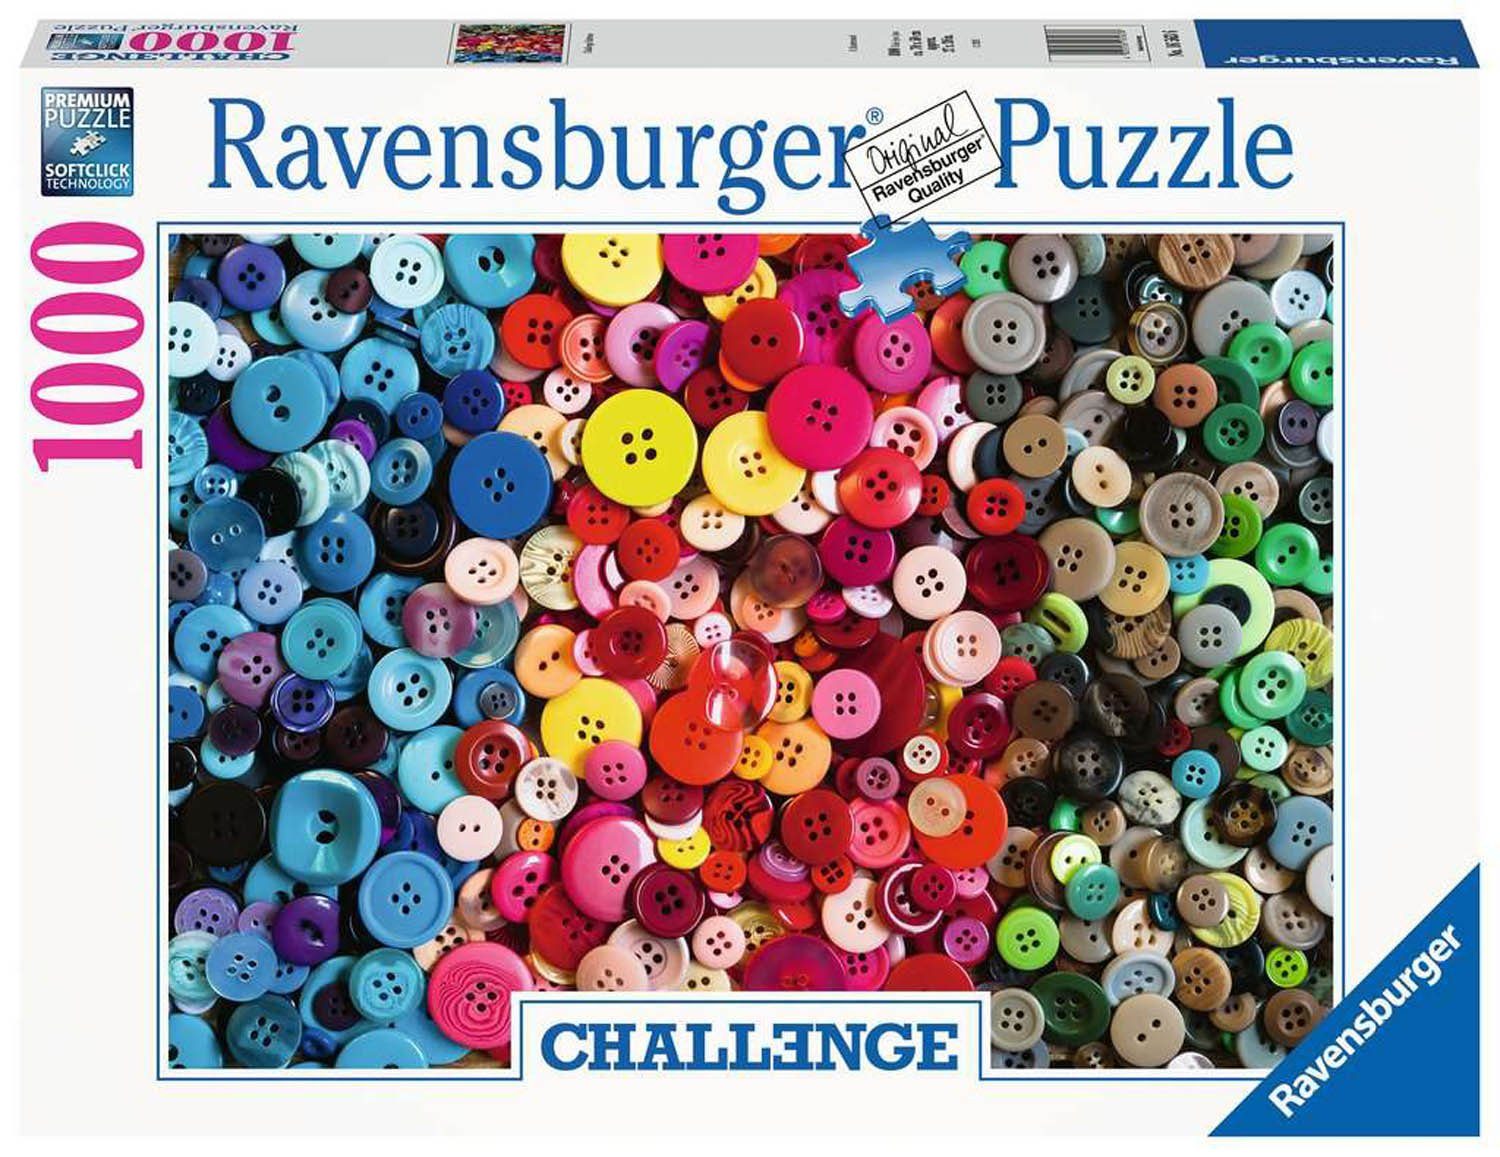 Ravensburger Puzzle Ravensburger 16563 - Challenge Buttons, Puzzleteile